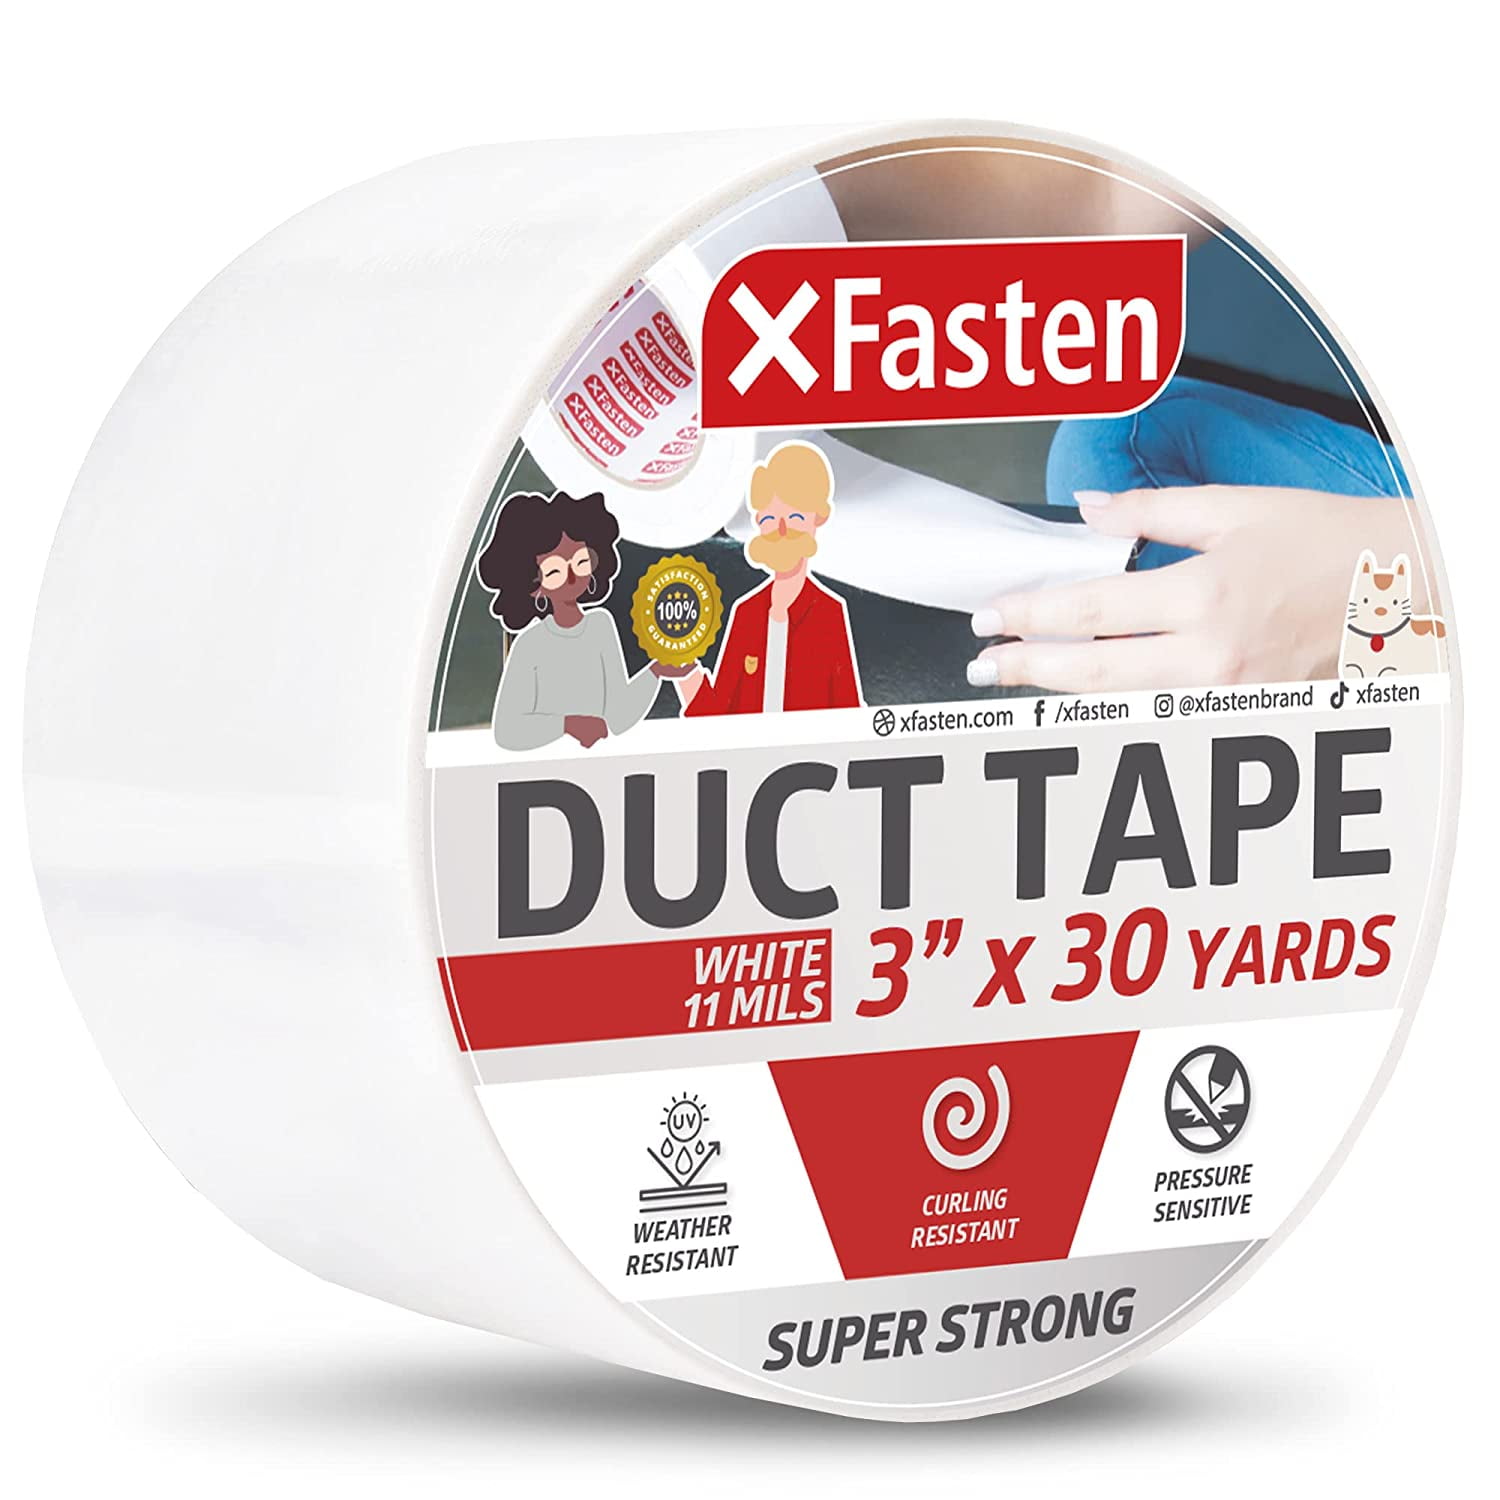 Silver Duct Tape, Heavy-Duty, Waterproof Tape, Strong, Flexible